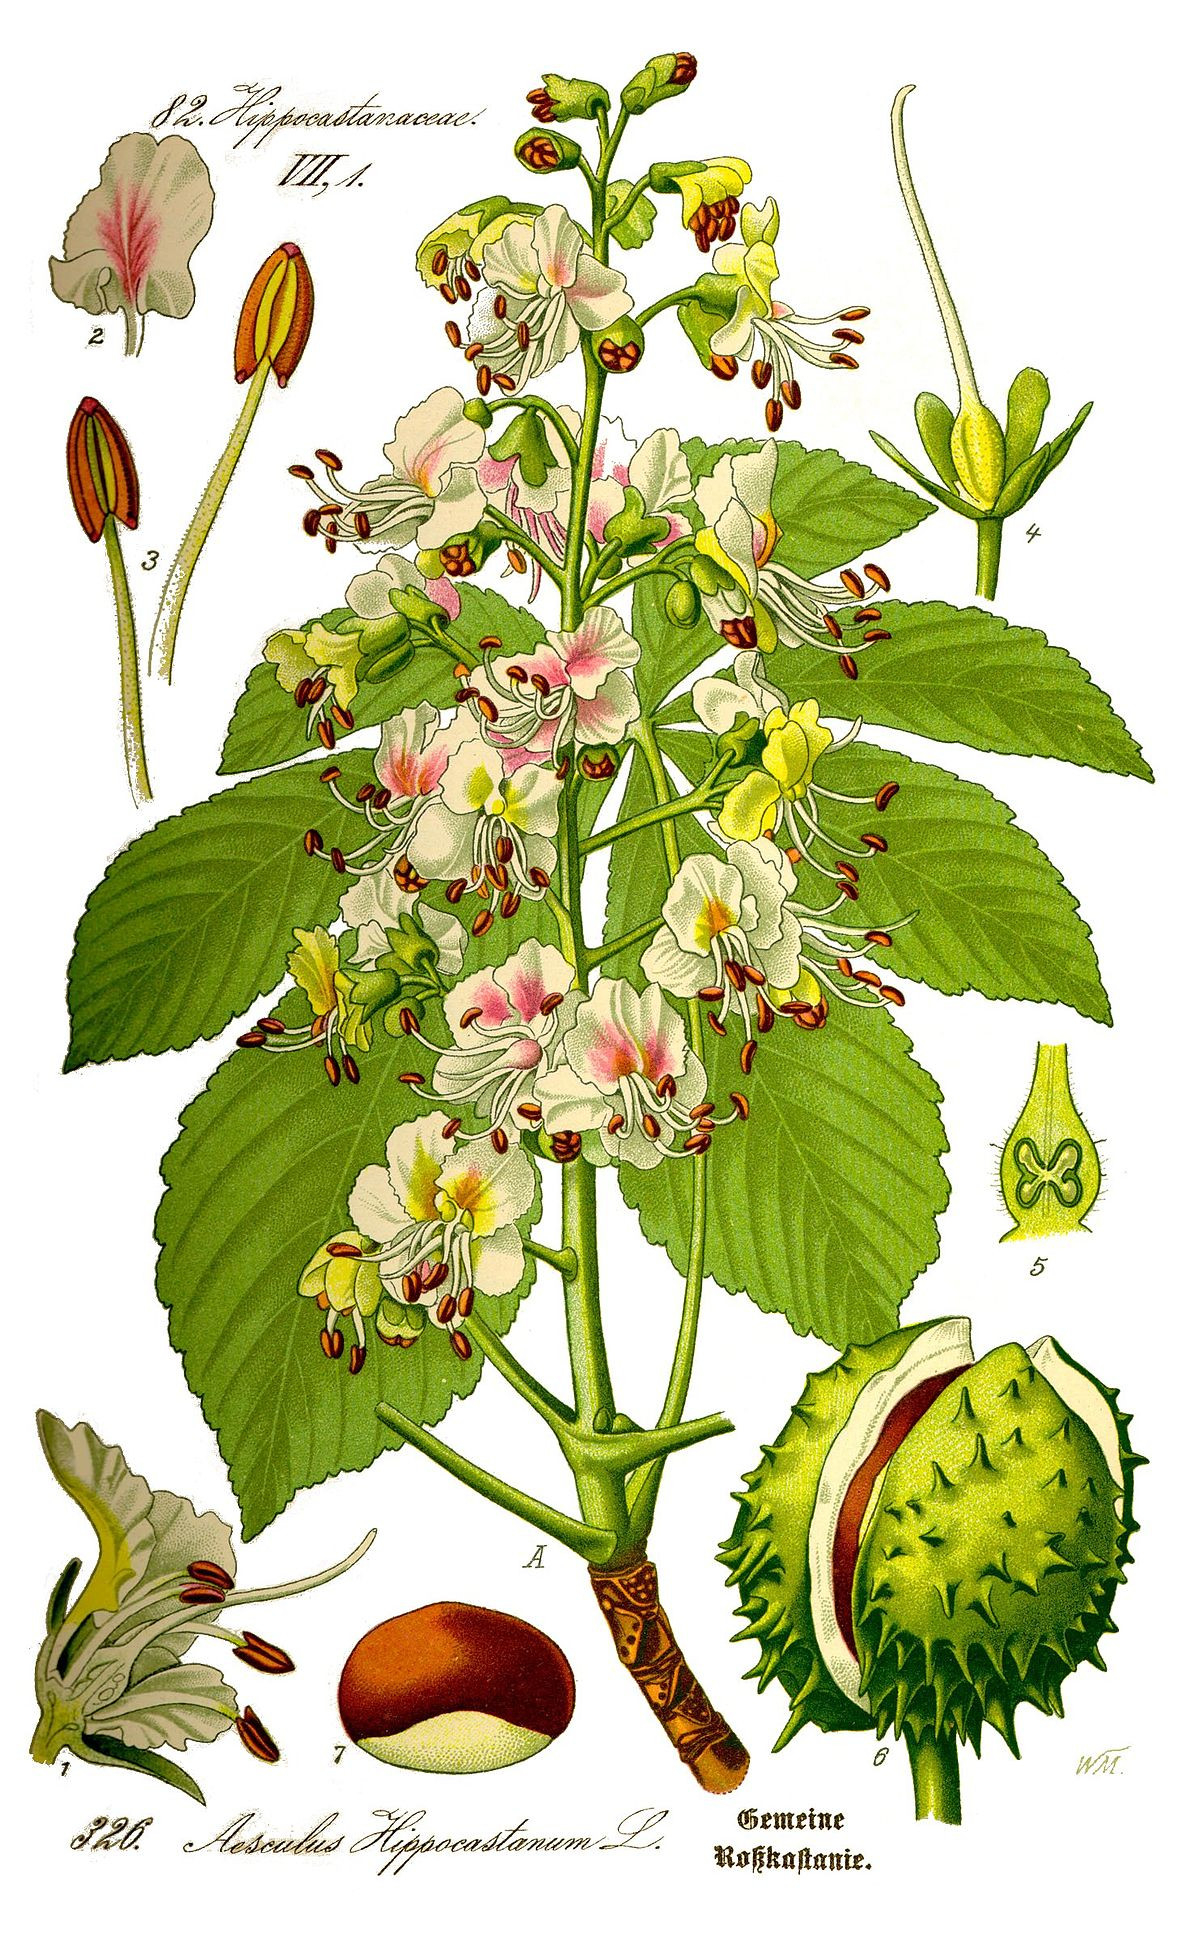 Aesculus Hippocastanum - Wikipedia